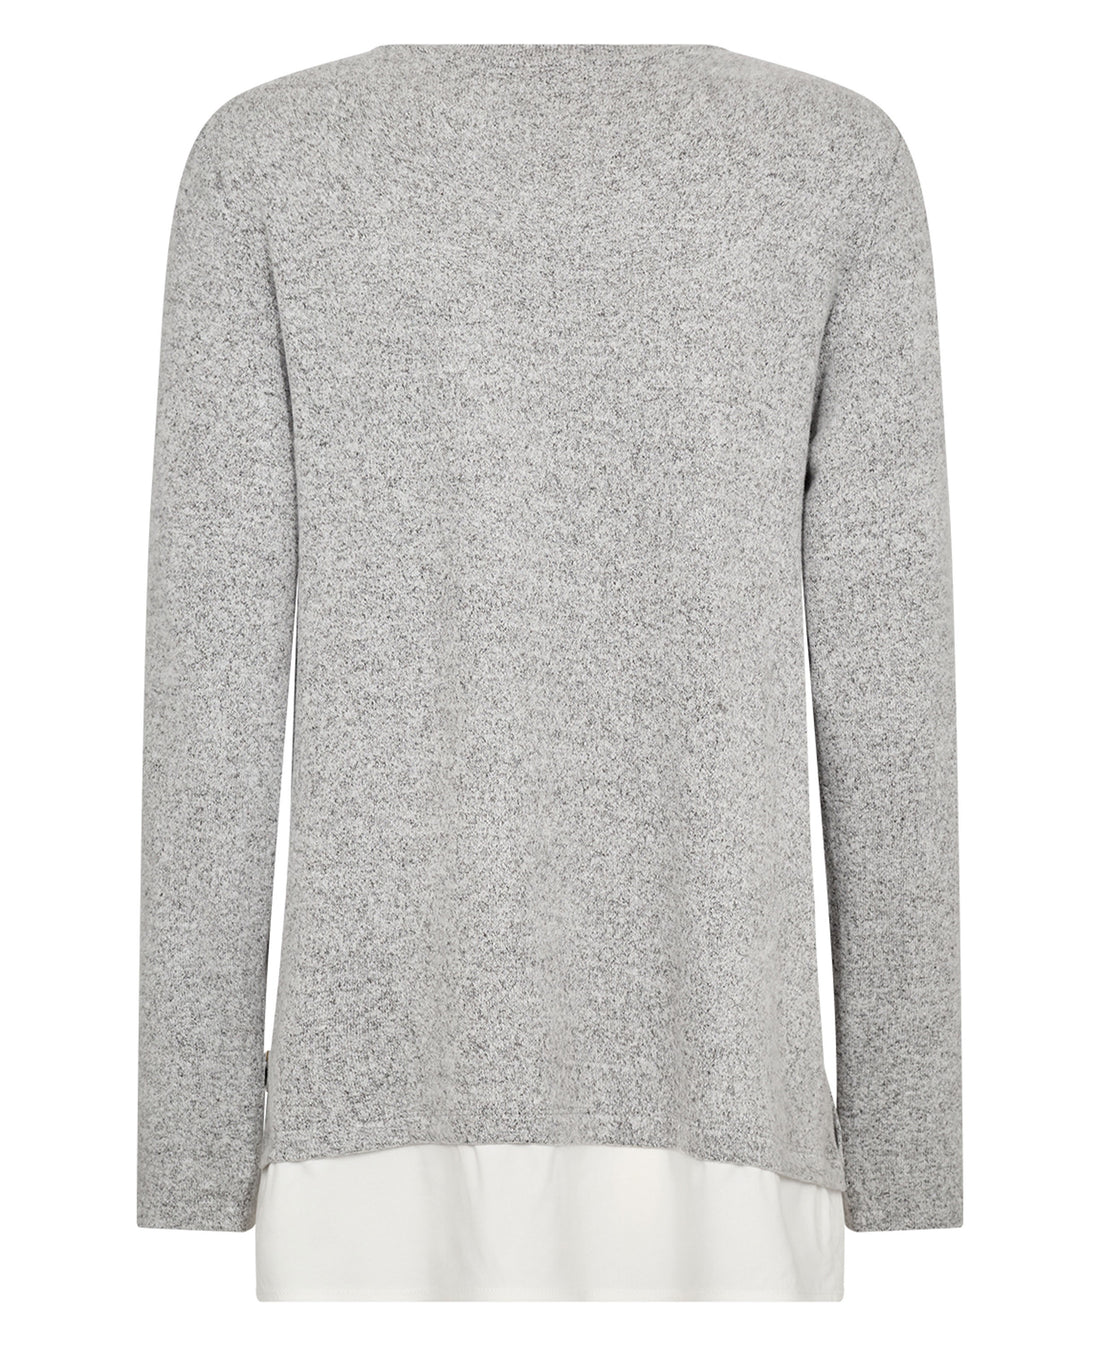 Biara 81 Sweatshirt - Light Grey Melange